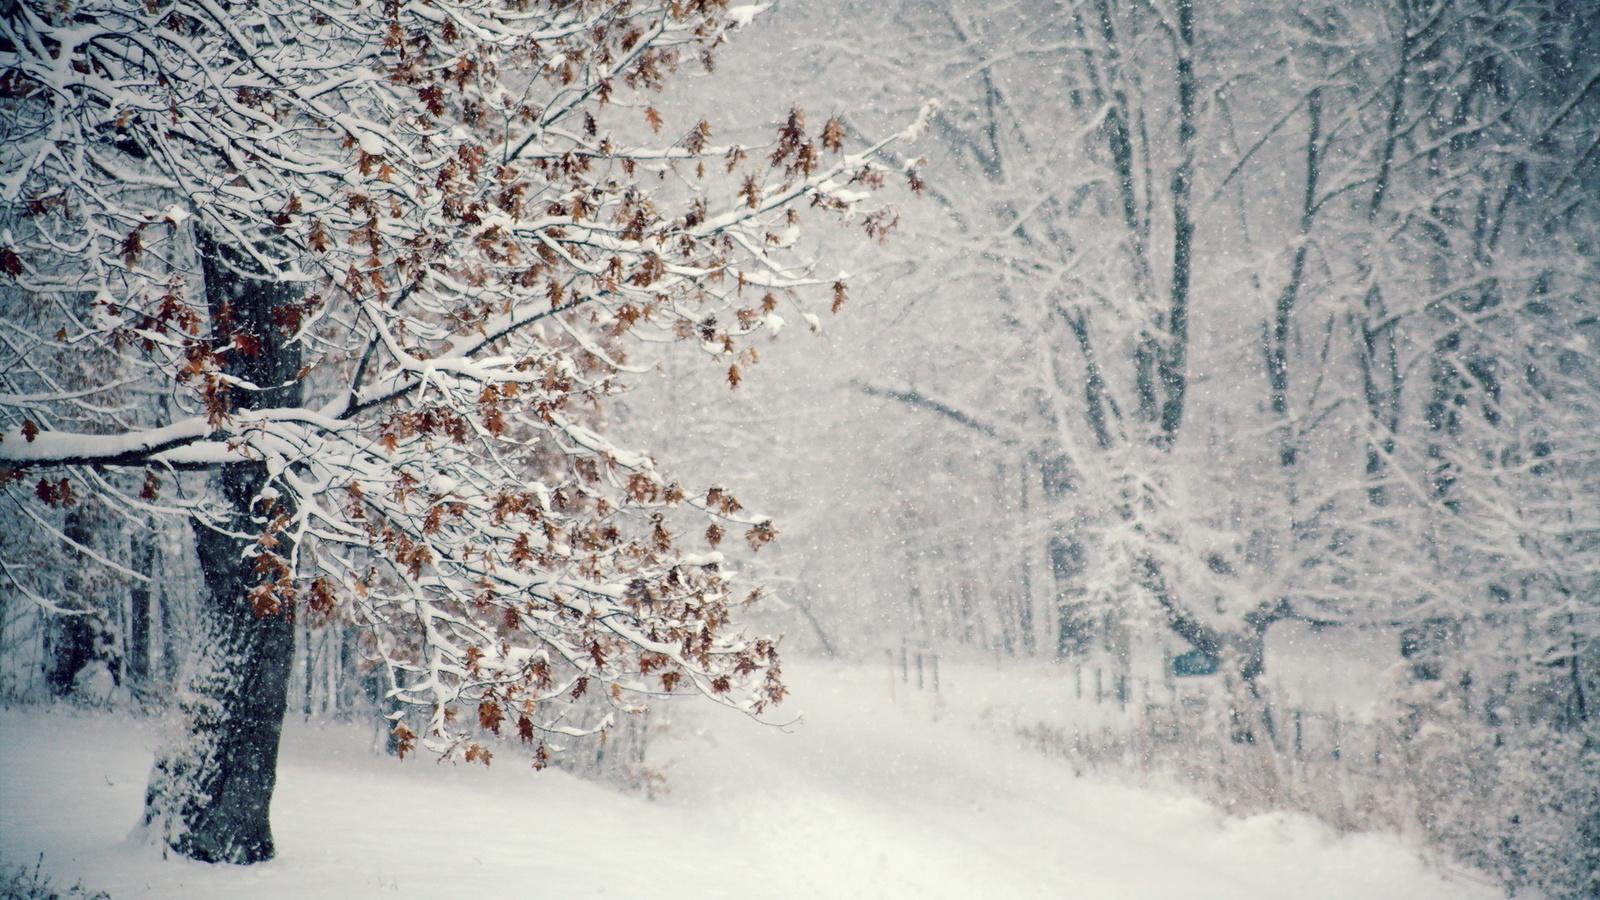 Картинки метель, снег, дерево, Зима - обои 1600x900, картинка №52582